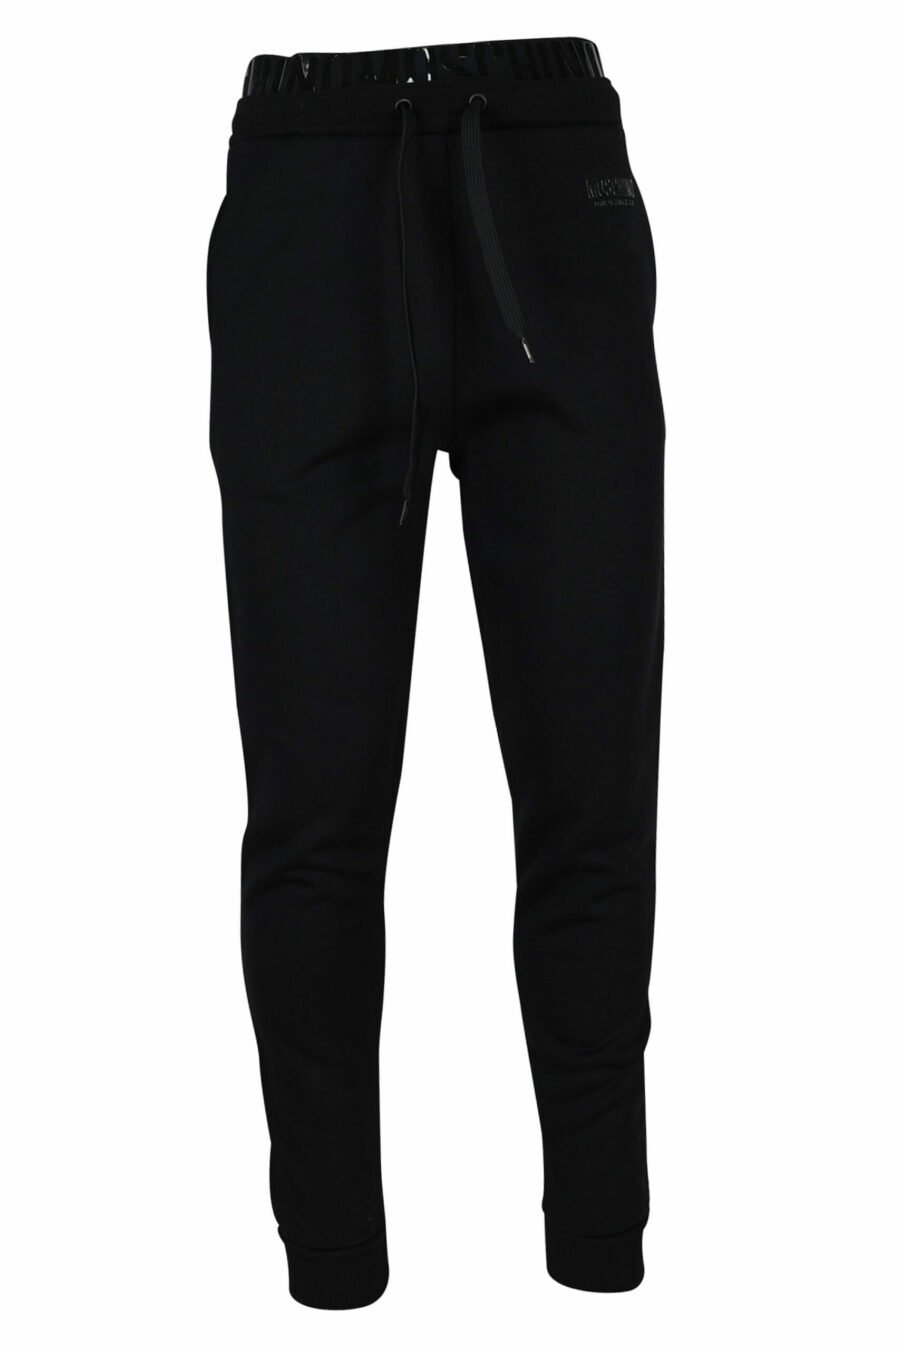 Pantalón de chándal con logo monocromático en cinta en cintura - 667113016740 scaled